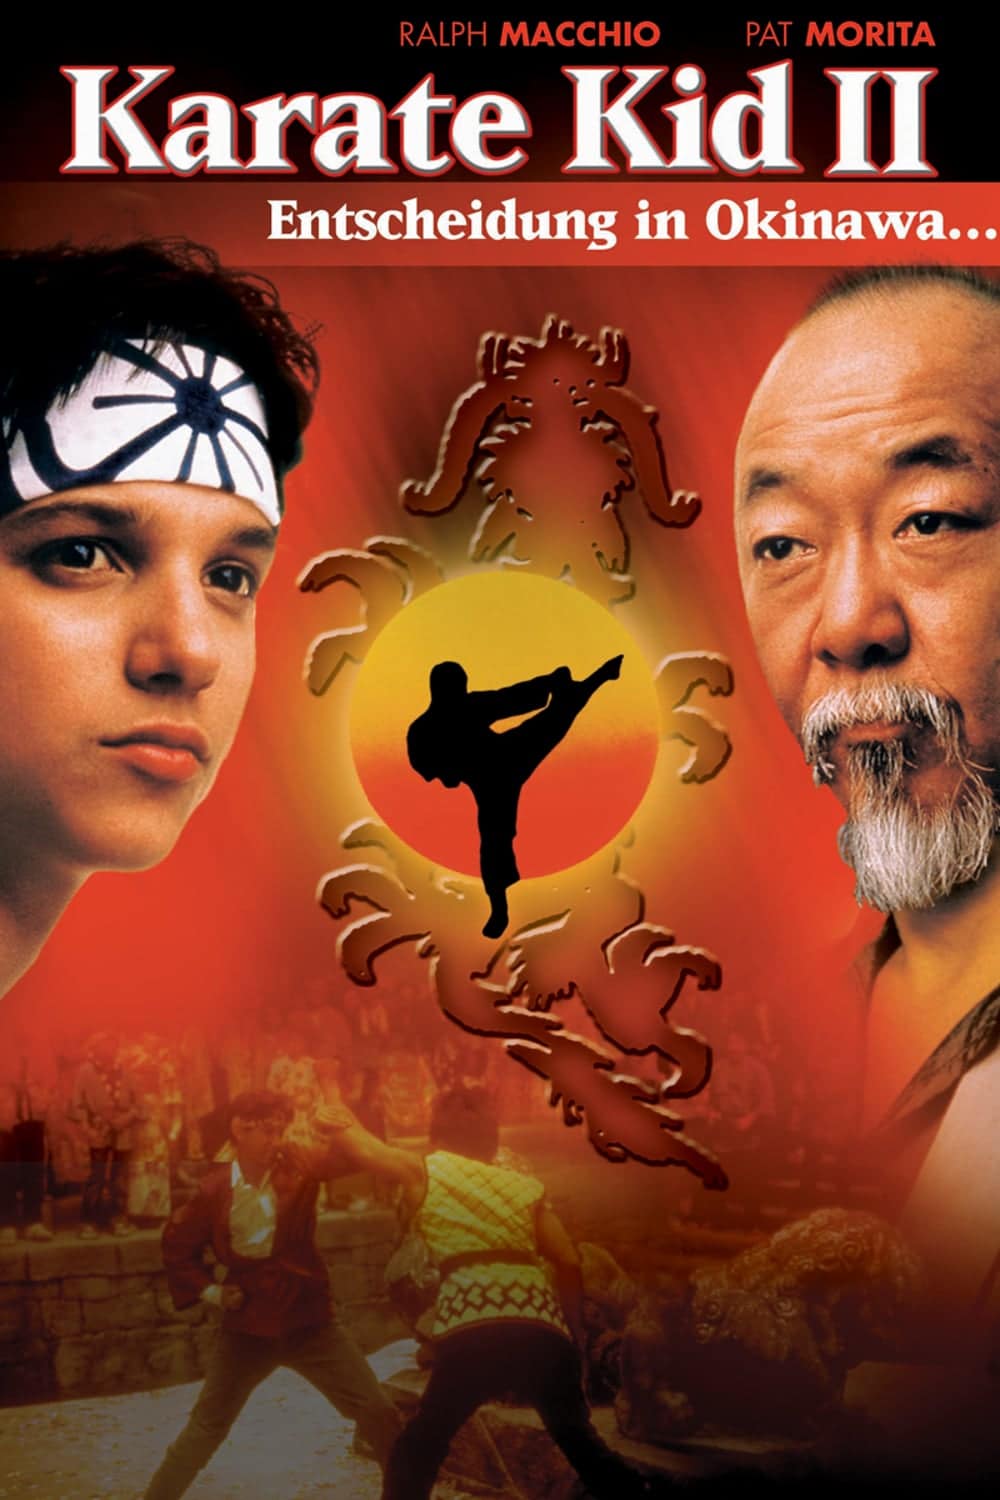 Plakat von "Karate Kid II - Entscheidung in Okinawa"